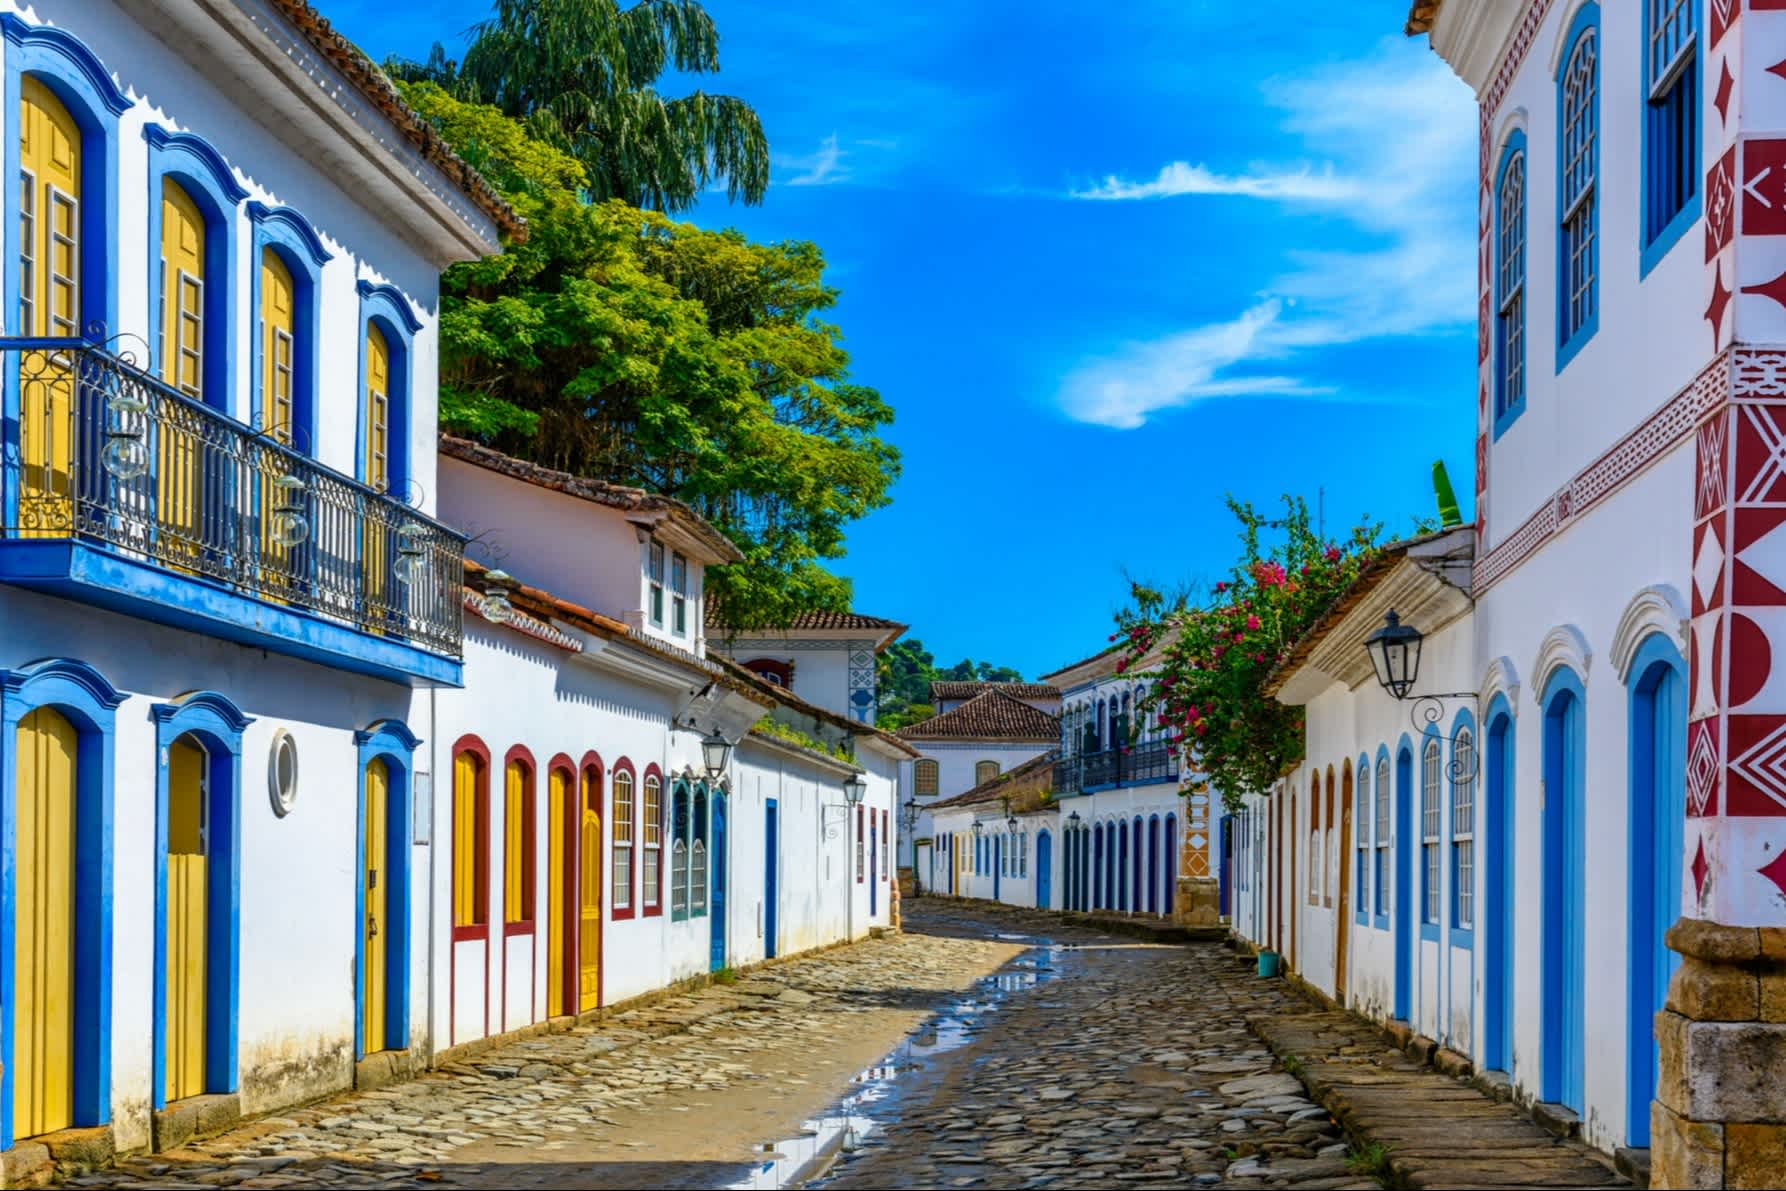 Straße des historischen Zentrums in Paraty, Rio de Janeiro, Brasilien. Paraty ist eine erhaltene portugiesische Kolonialstadt und brasilianische Kaiserstadt